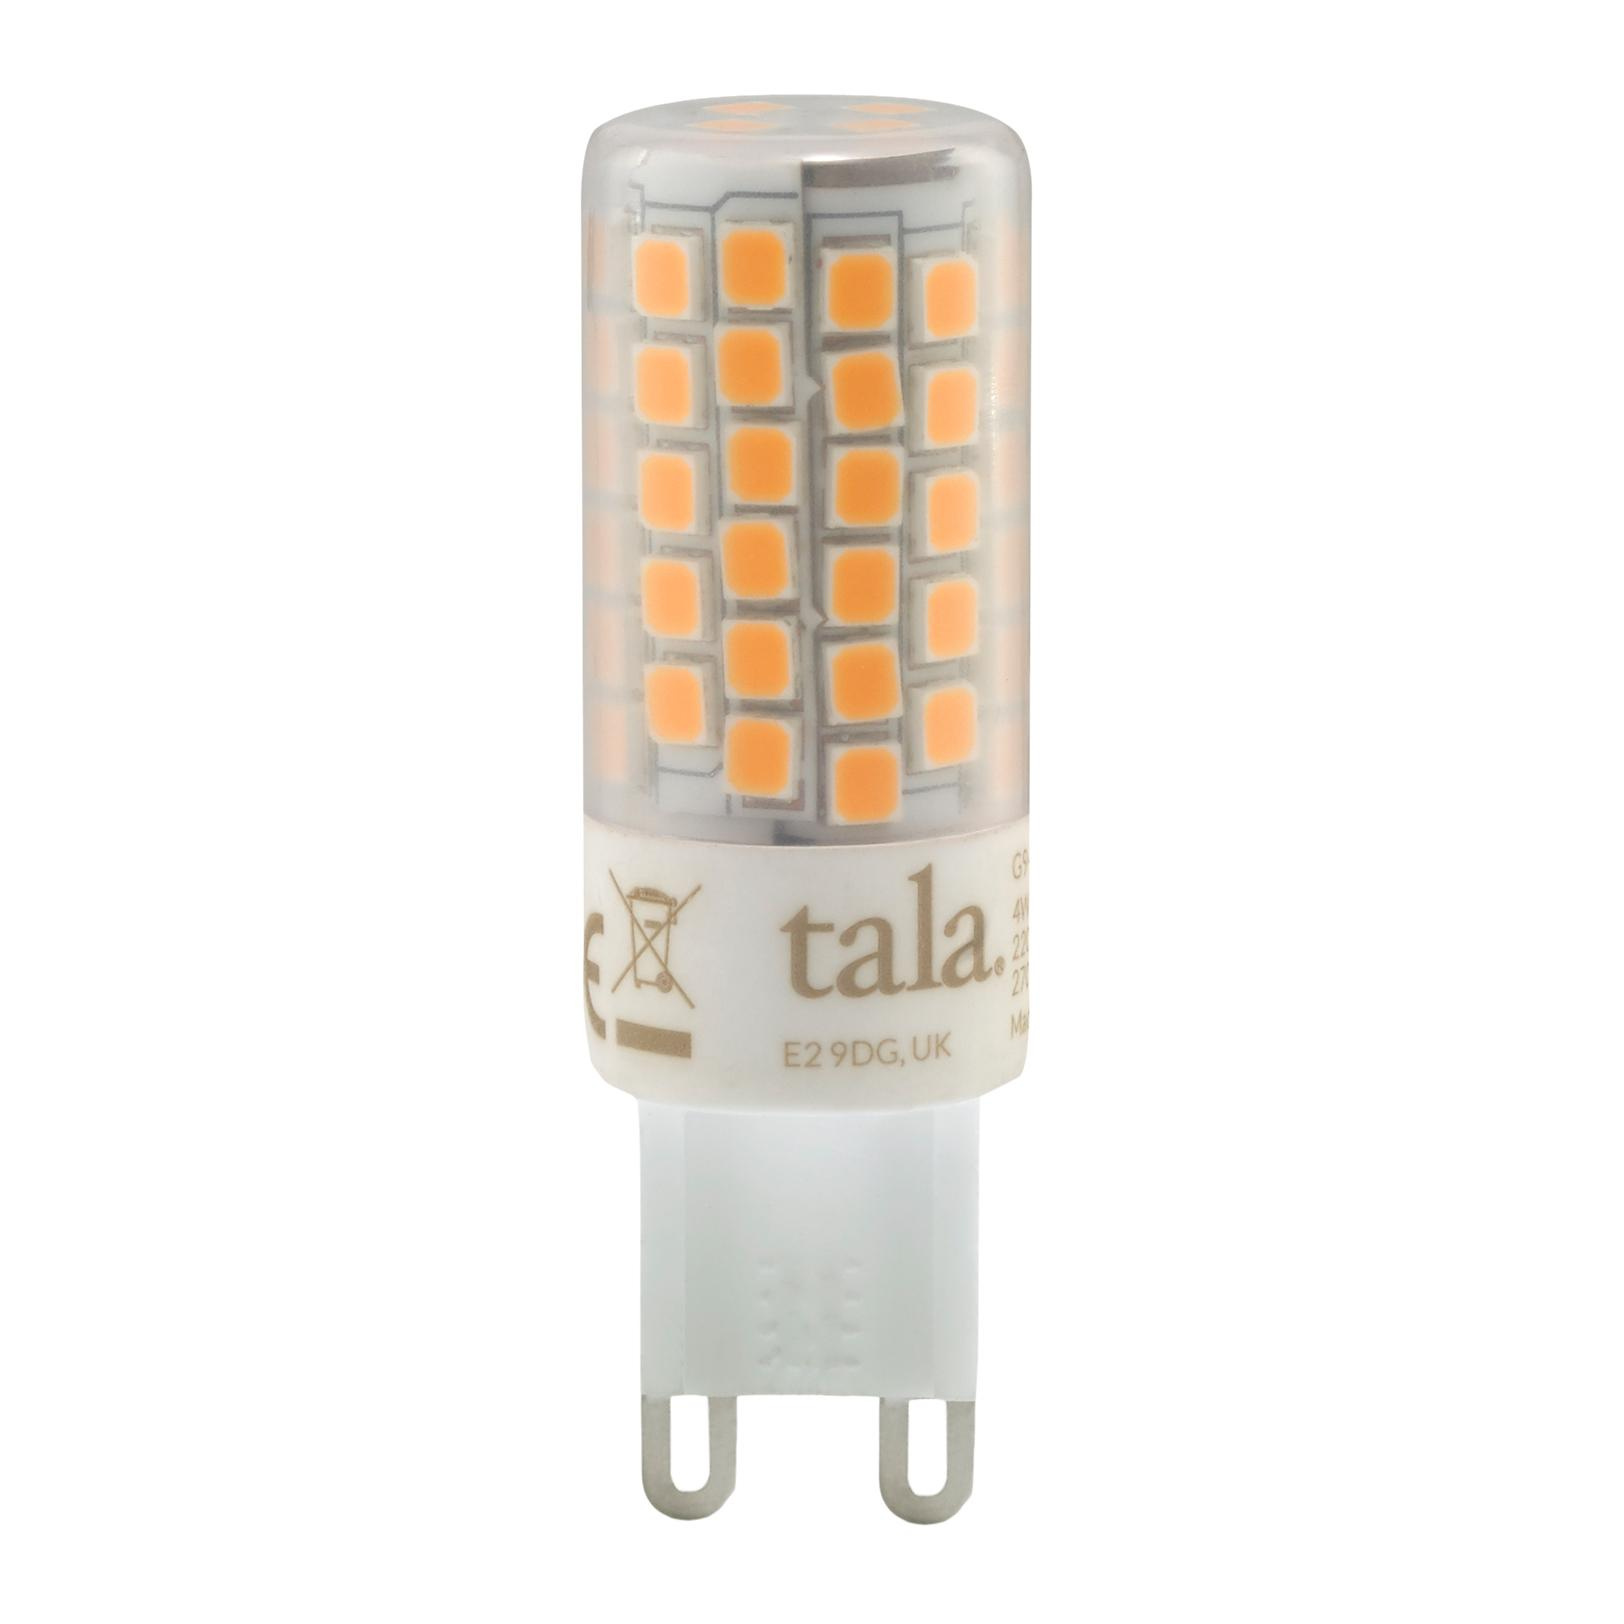 Tala - LED G9 PIN 340 KLAR 3,6W => 33W - leicht gefrostet/Keramik/Polykarbonat/dimmbar/H x  5,7 x 1,8 cm/360lm/2700K/CRI97/CE/IP20